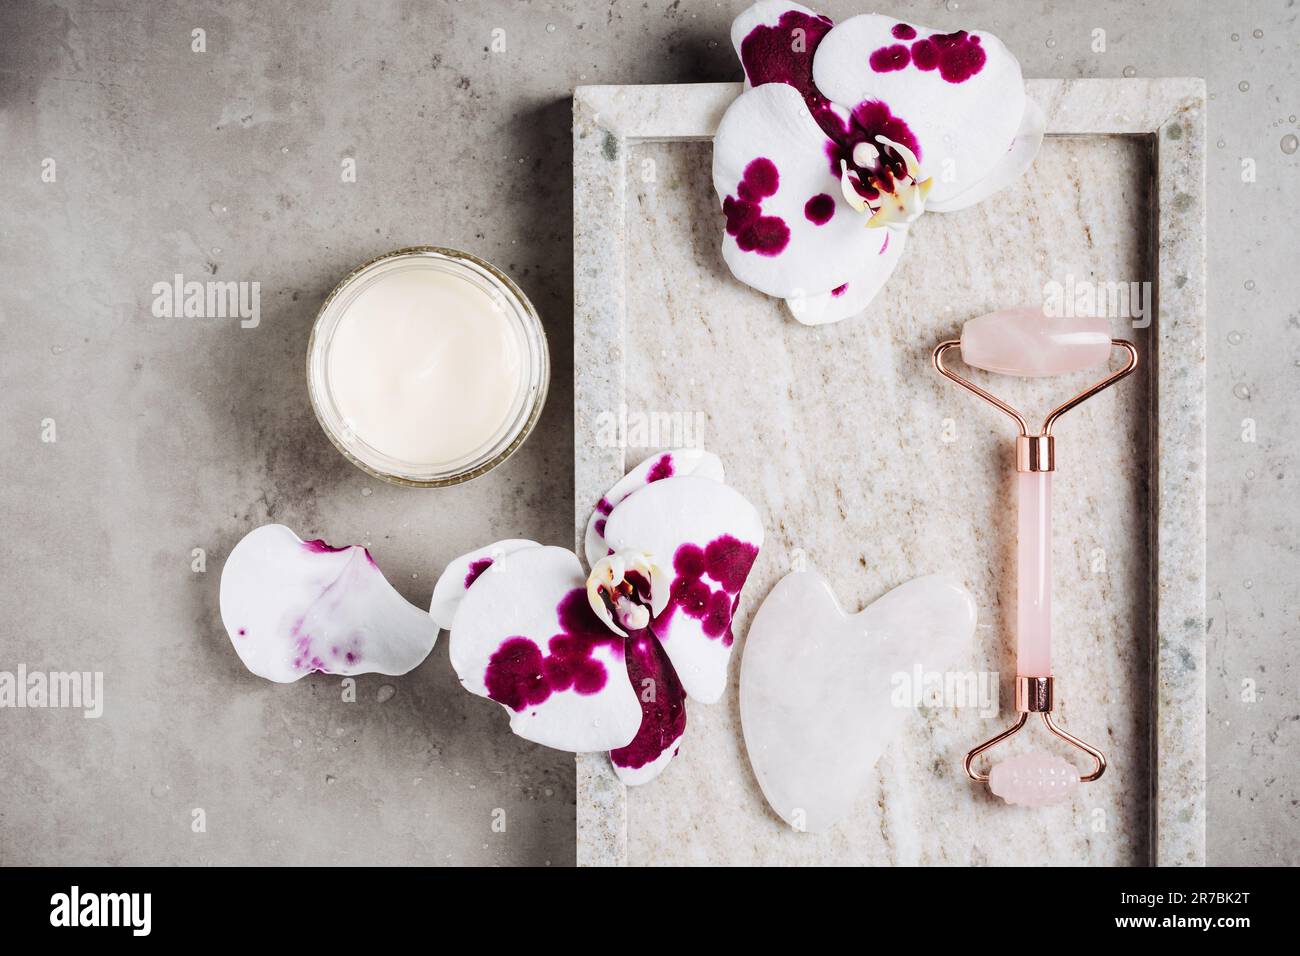 Rouleau à cadran en quartz rose, fleurs de SHA gua et d'orchidées sur fond de marbre. Concept spa, soin du visage. Banque D'Images